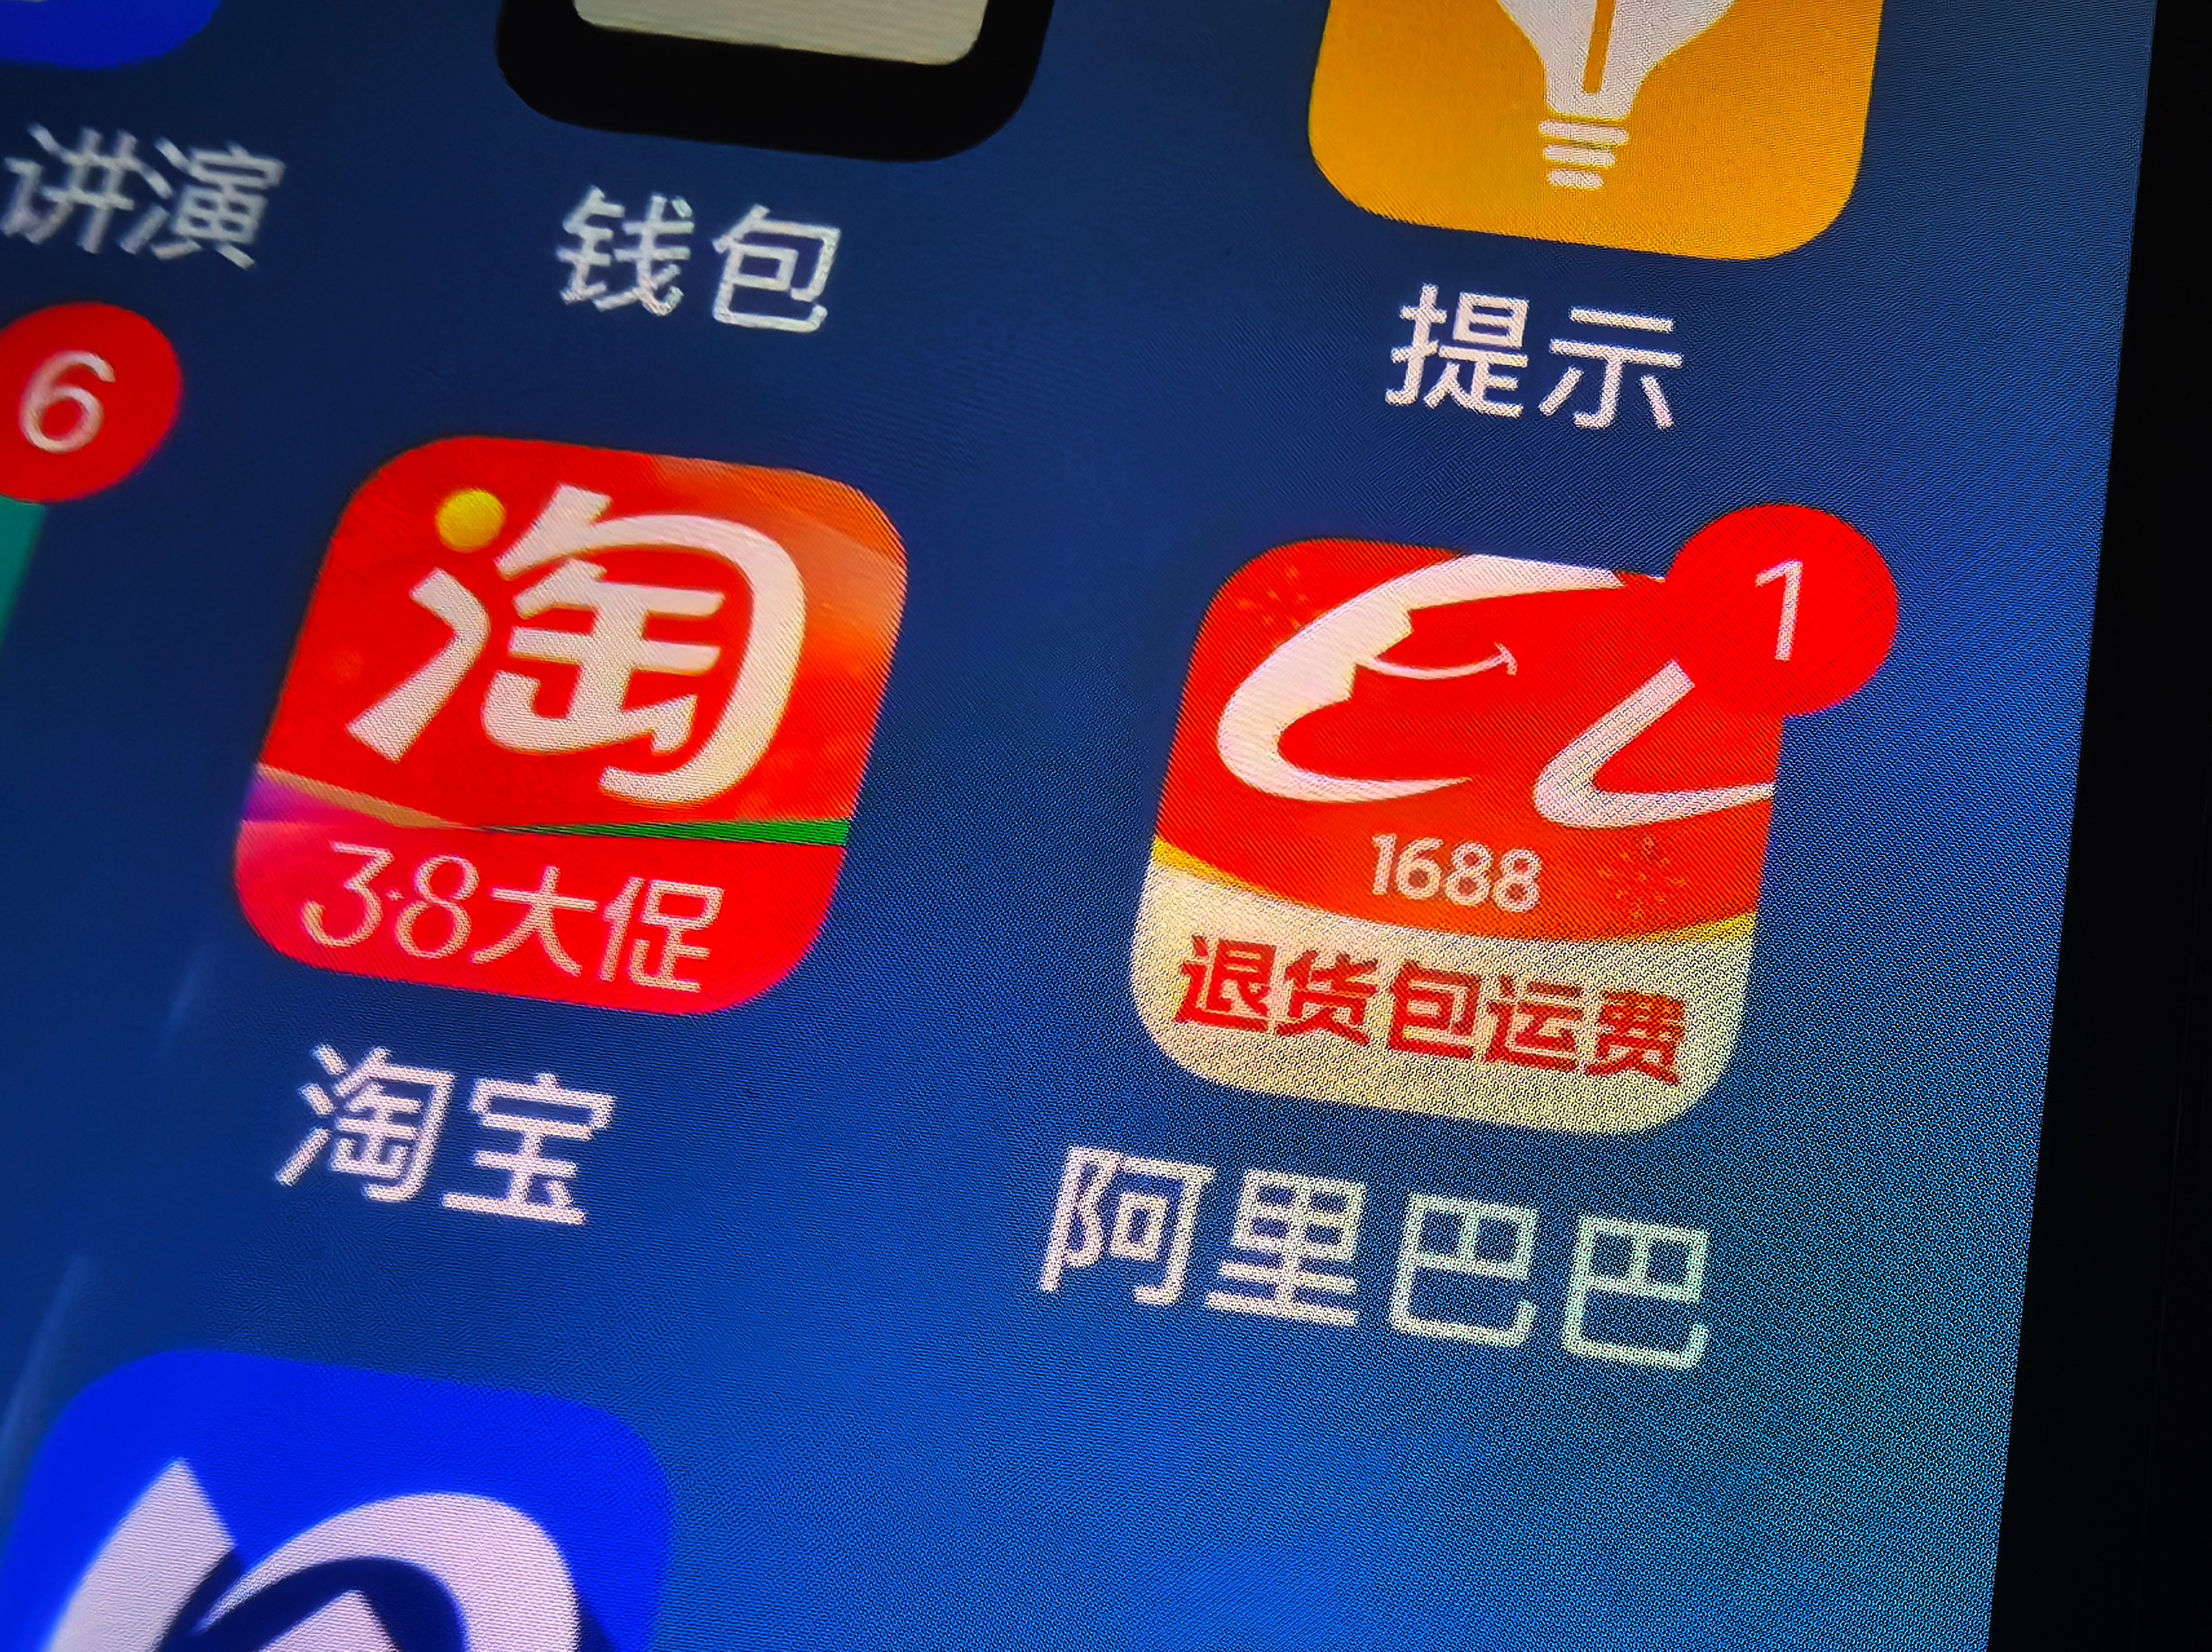 Alibaba scraps Hong Kong IPO plan for logistics unit Cainiao. Photo: SCMP/Simon Song